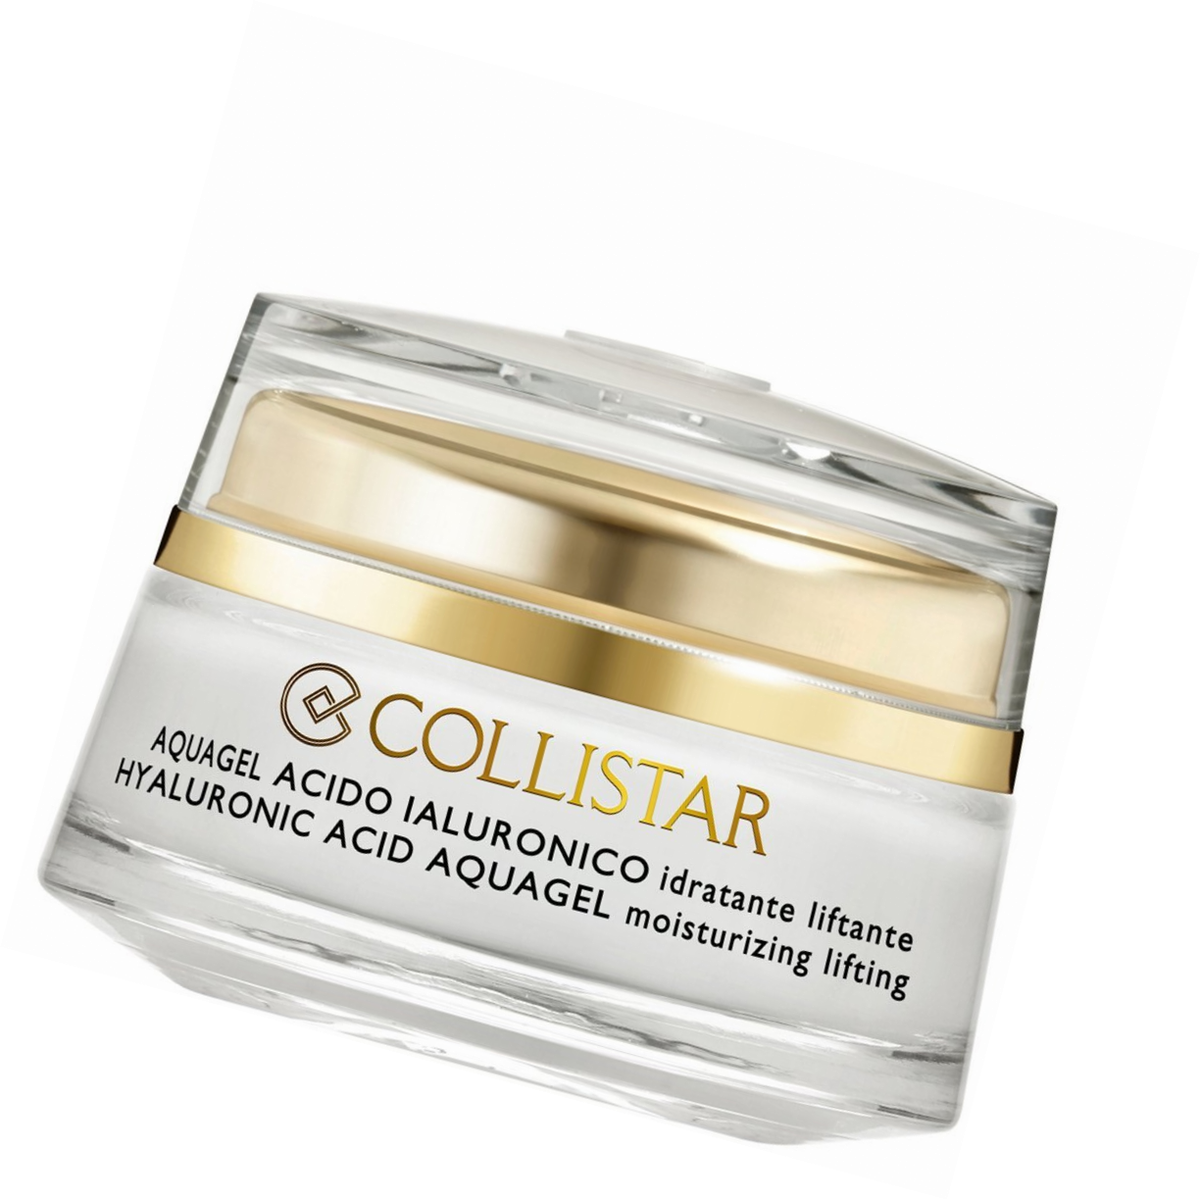 Collistar Aquagel Acide Hyaluronique 50ml